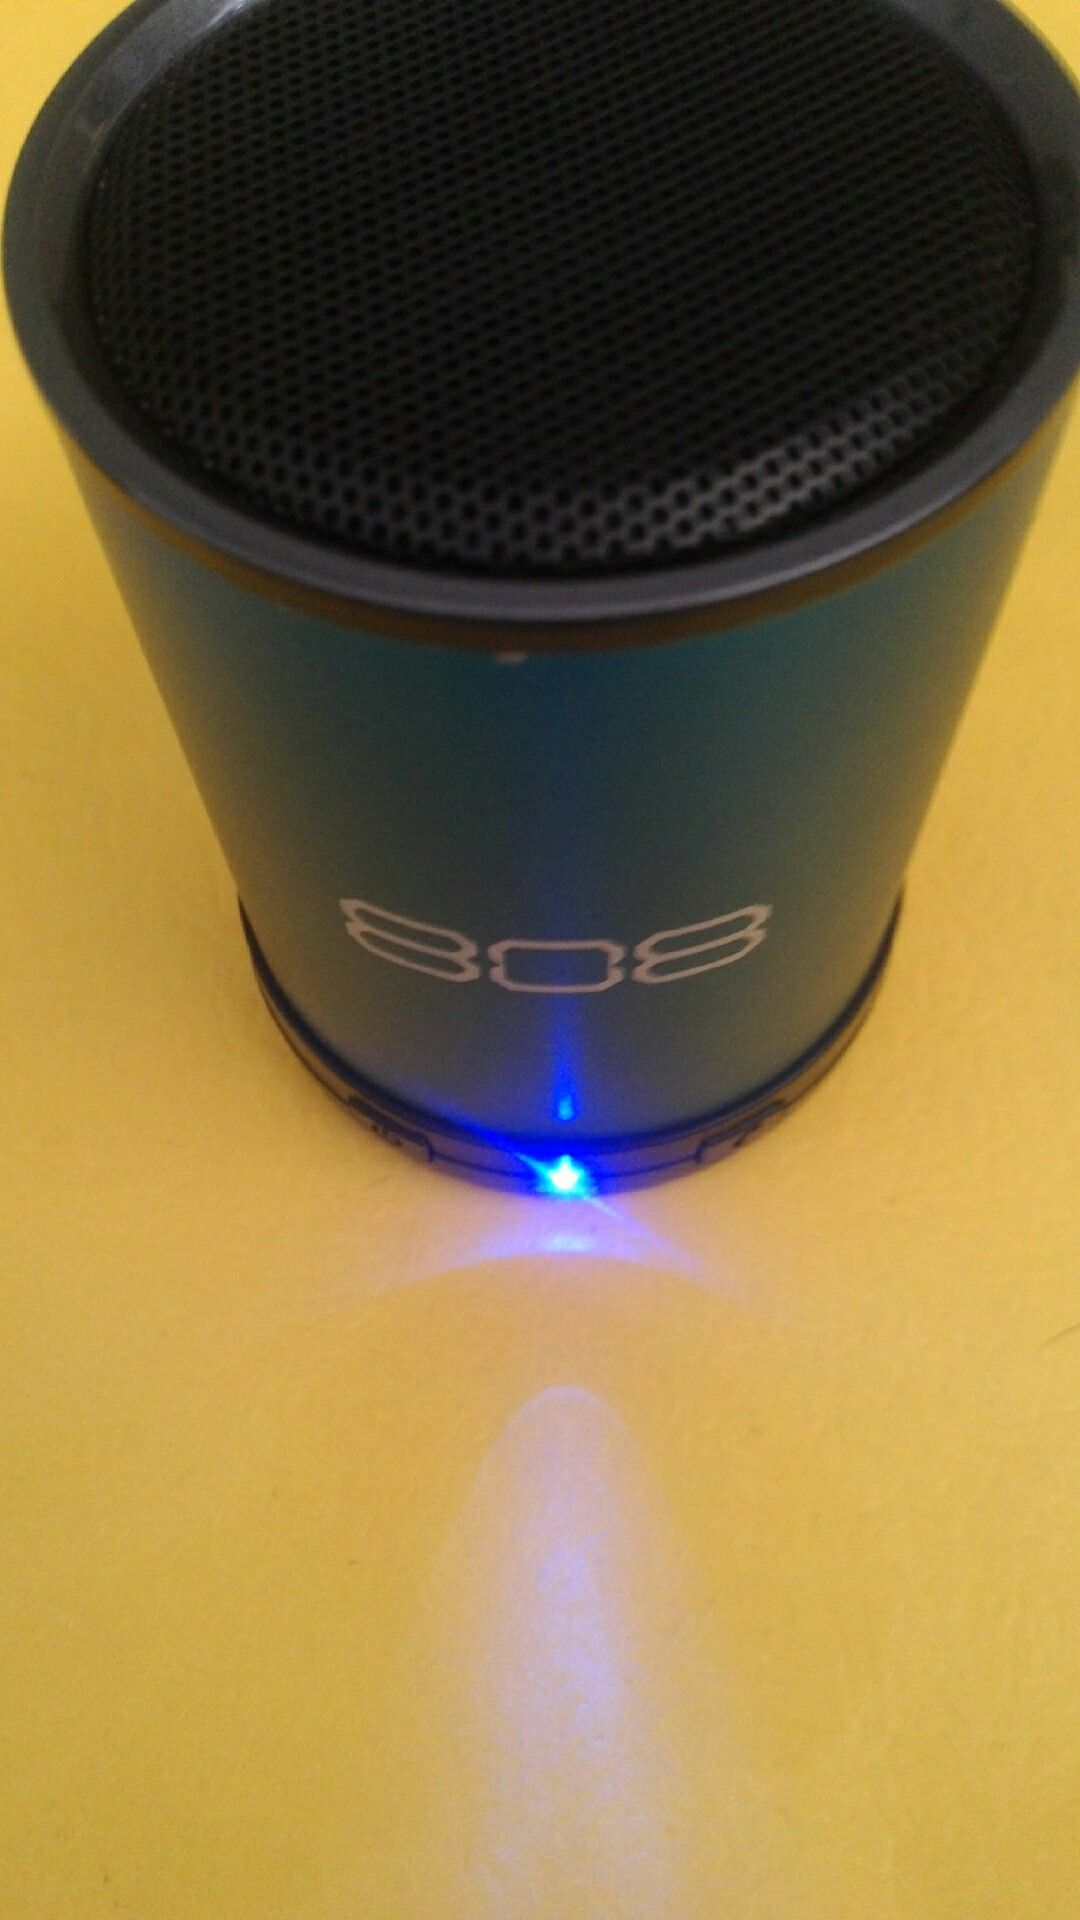 808 Bluetooth speaker